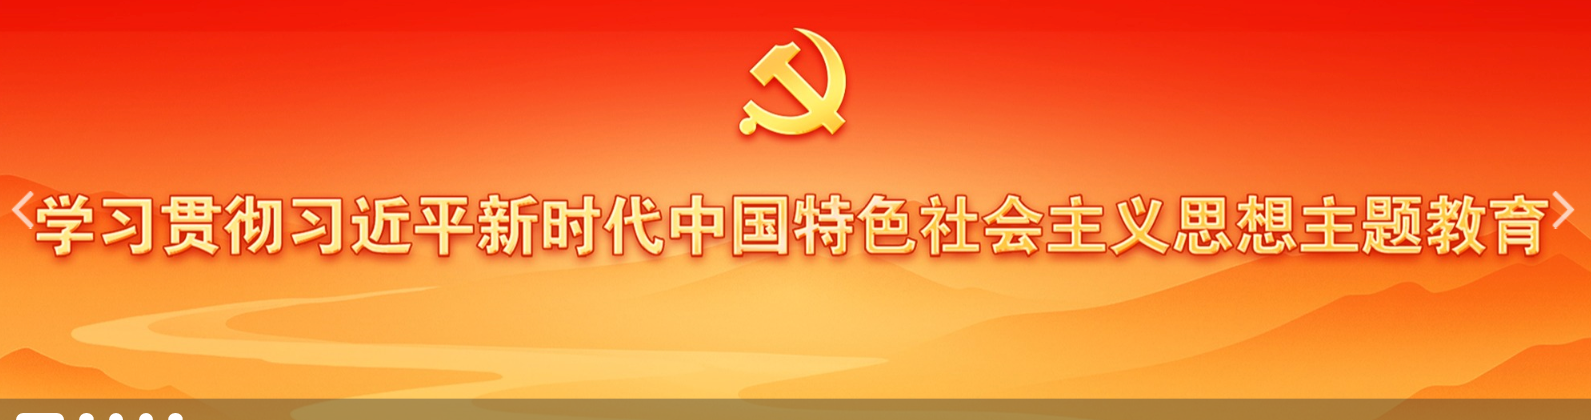 学习贯彻习近平新时代中国特色社会主义思想主题教育